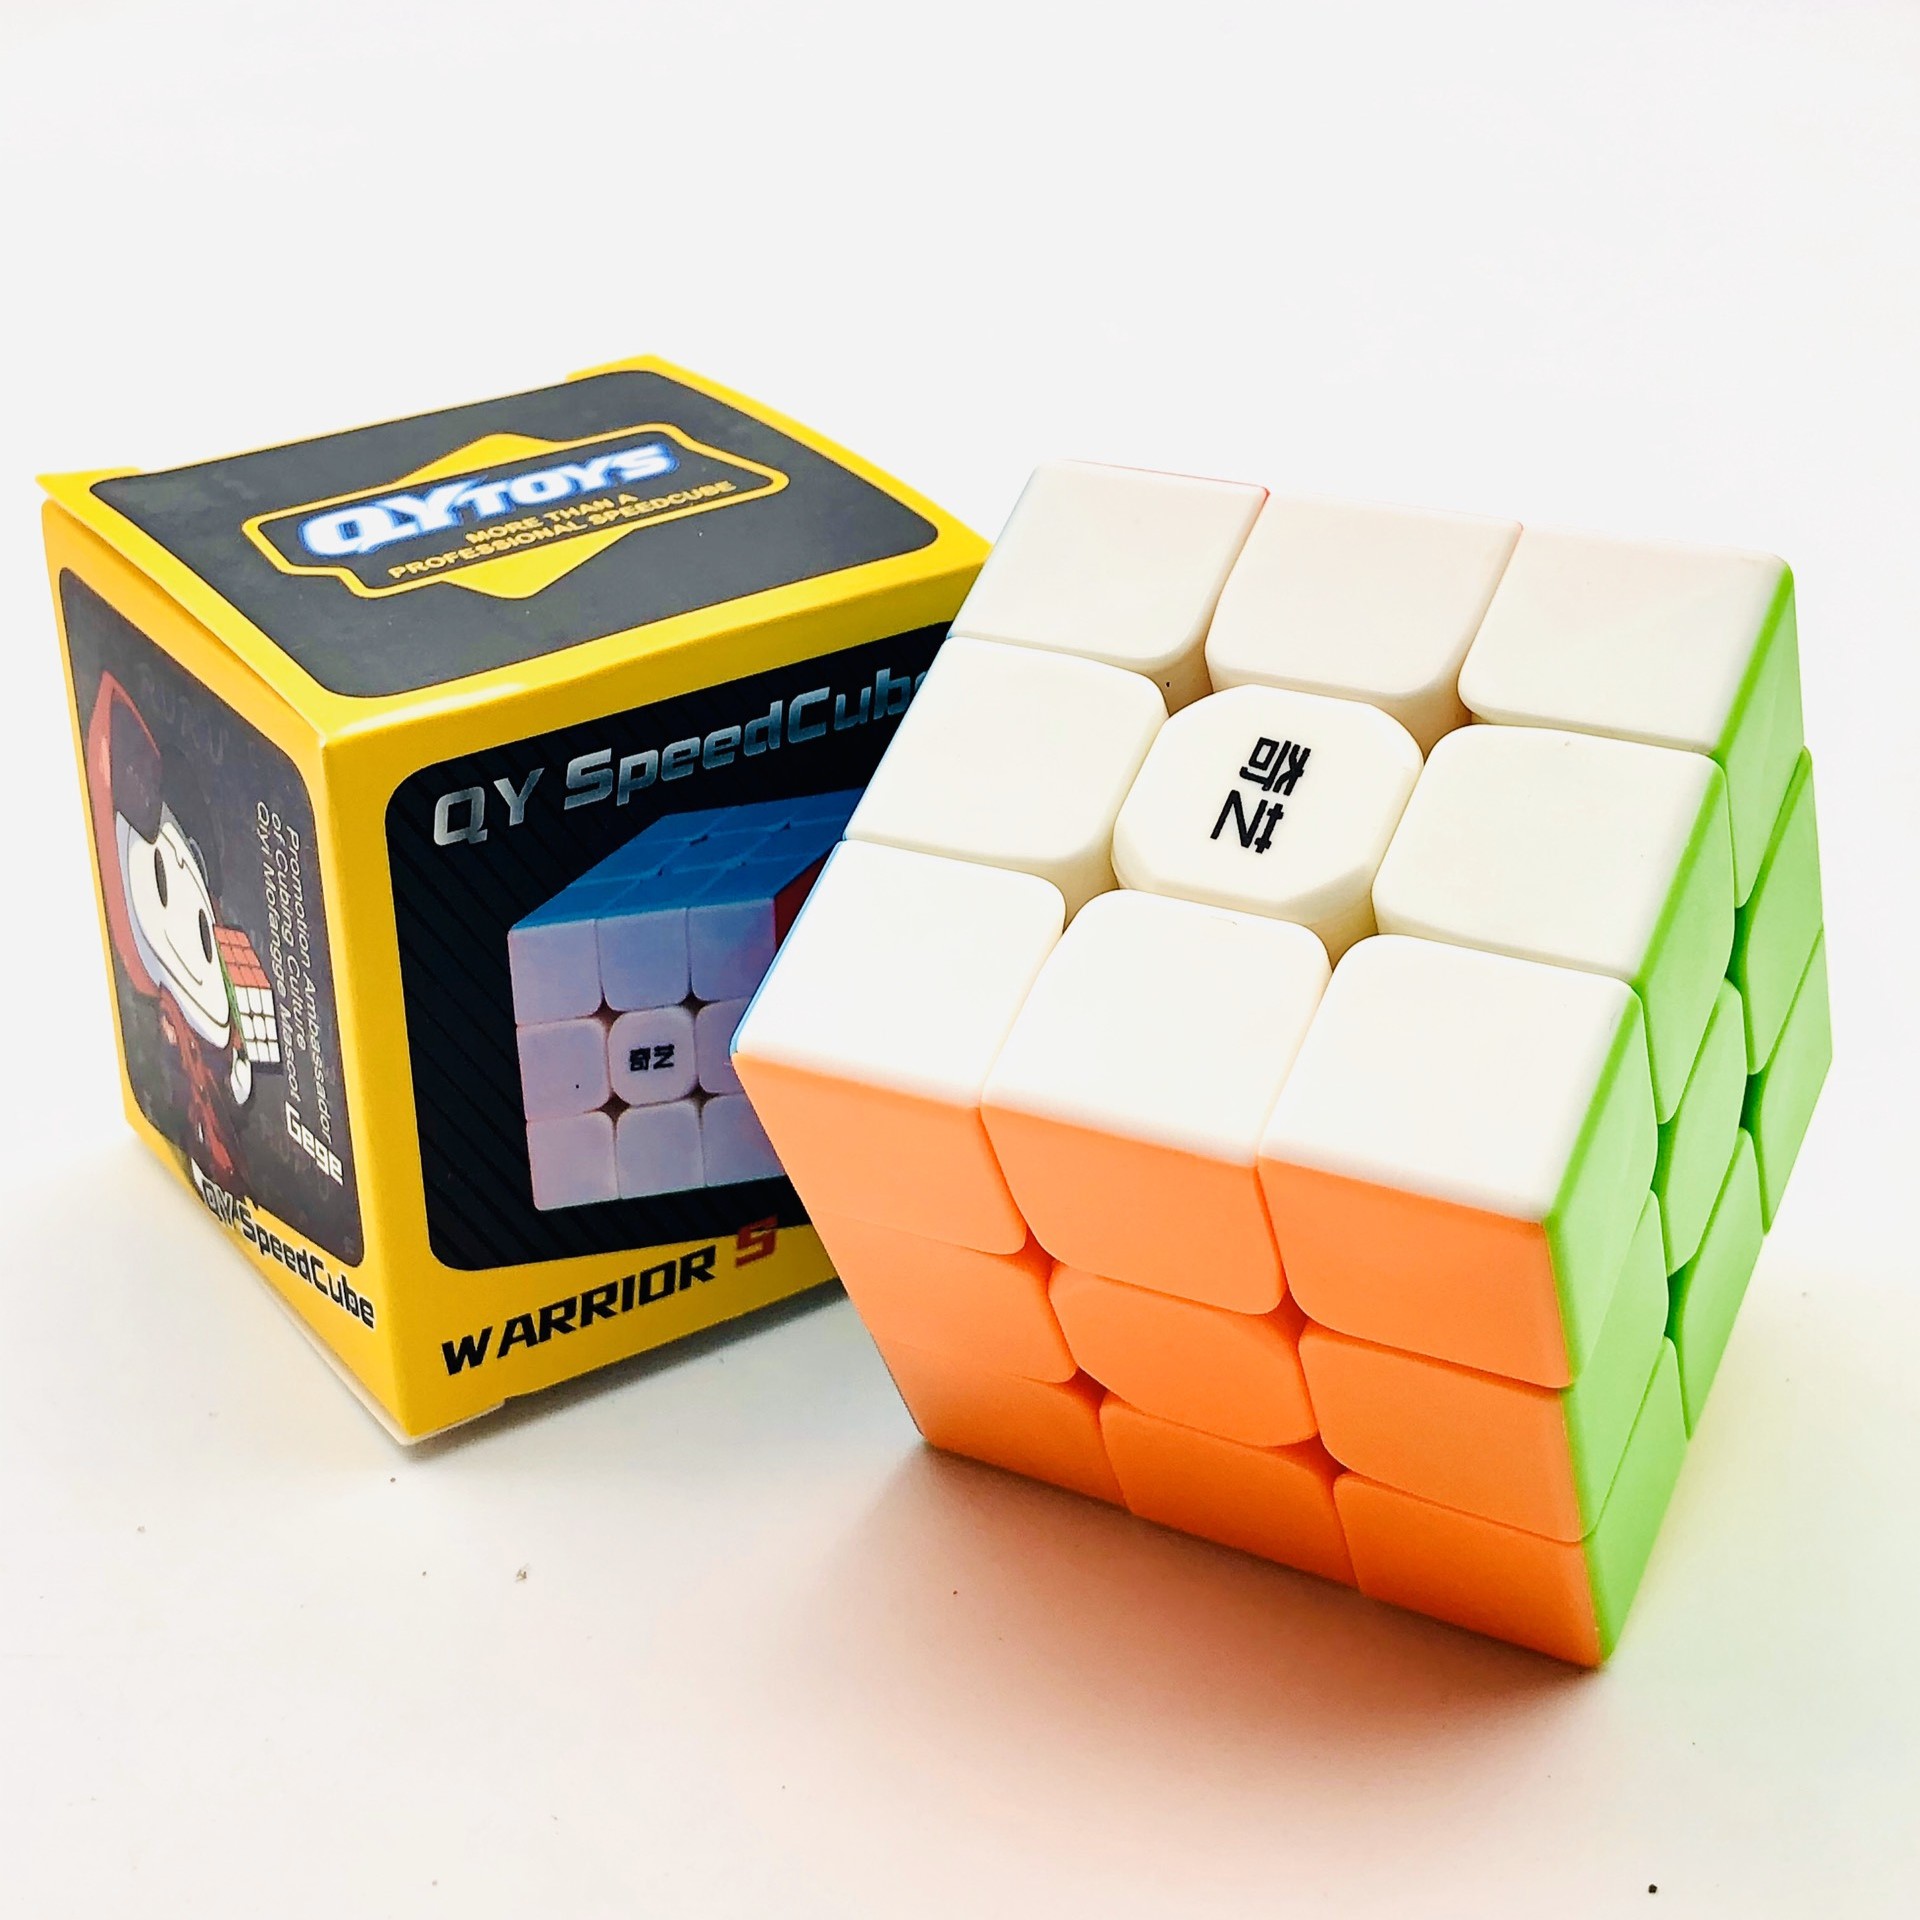 Rubik cao cấp mượt hiệu Qiyi QY TOYS – Stickerless 2x2 3x3 4x4 5x5 Pyraminx Skewb Megaminx Square-1 Windmill Dino Axis